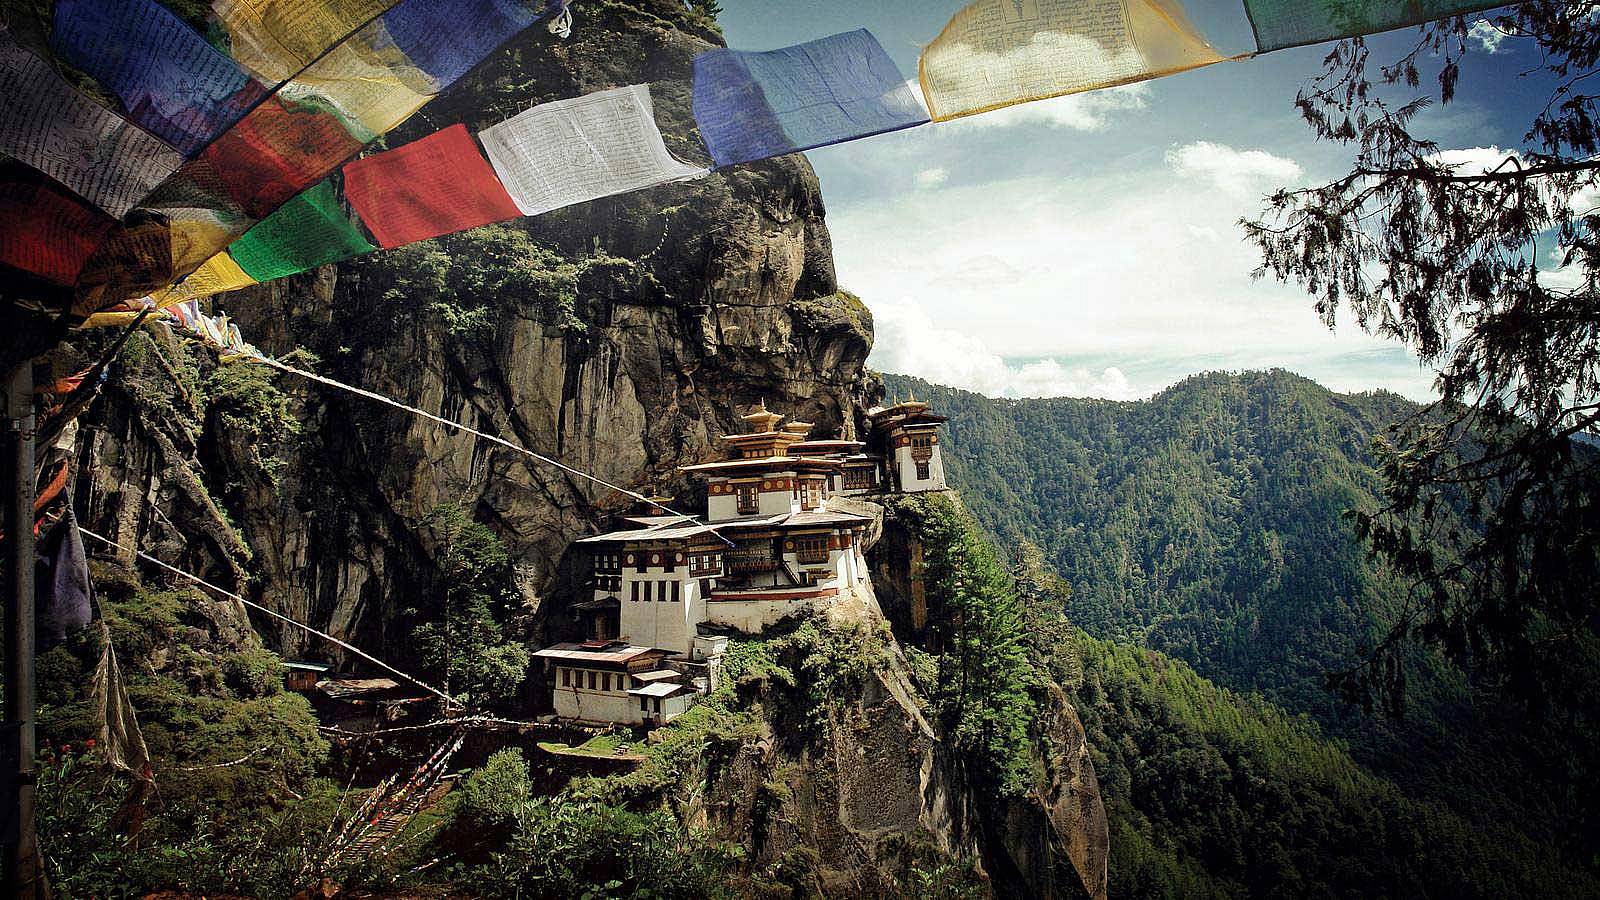 Wanderung zum spektakulären und heiligen Kloster Tiger’s Nest